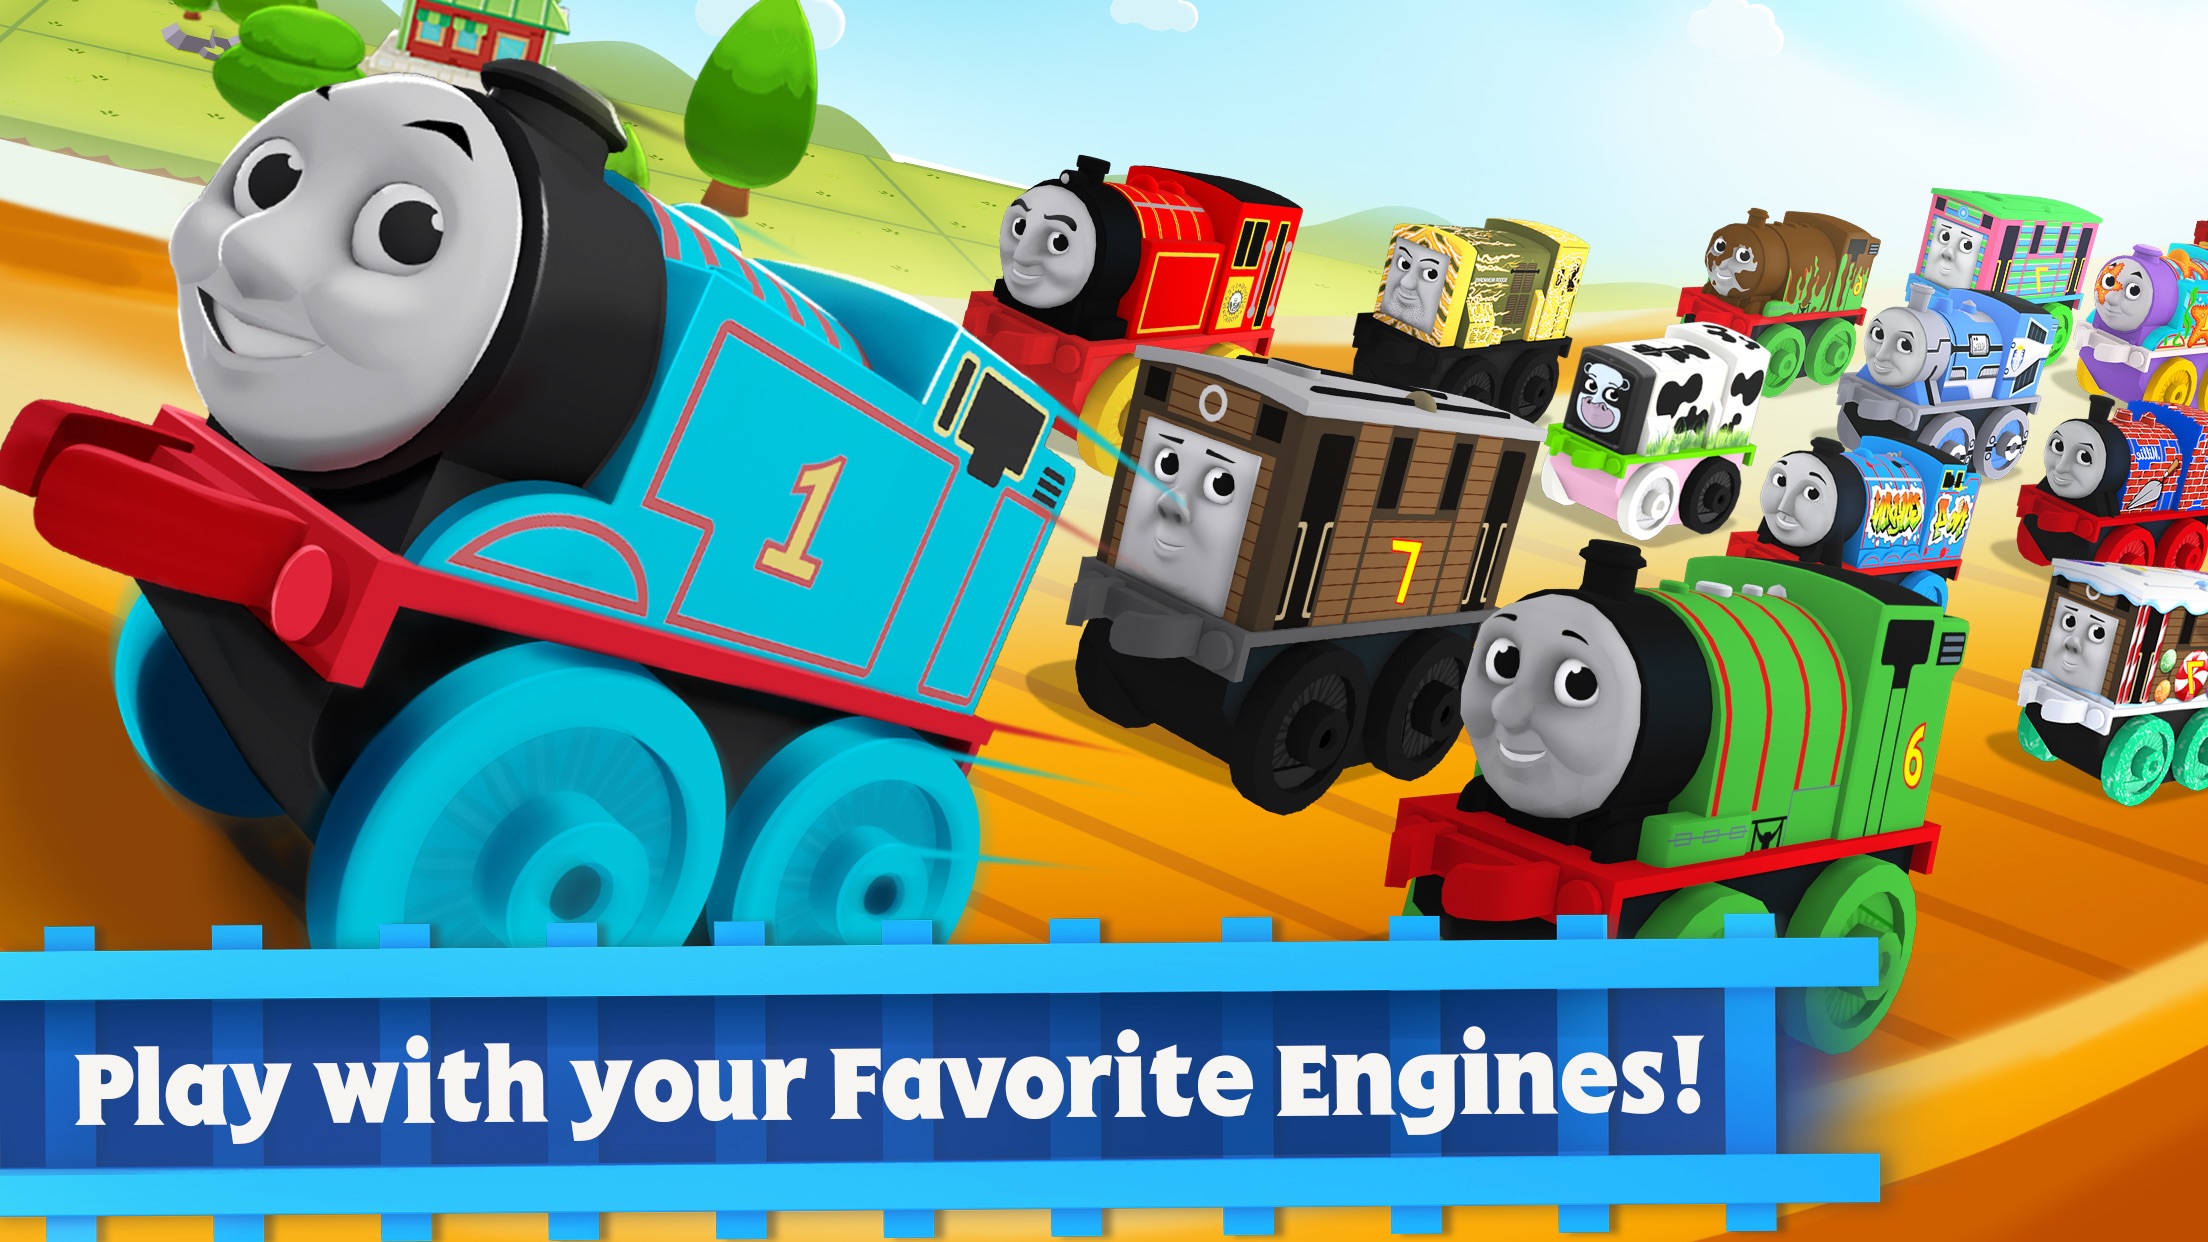 Screenshot do app Thomas e Seus Amigos: Minis